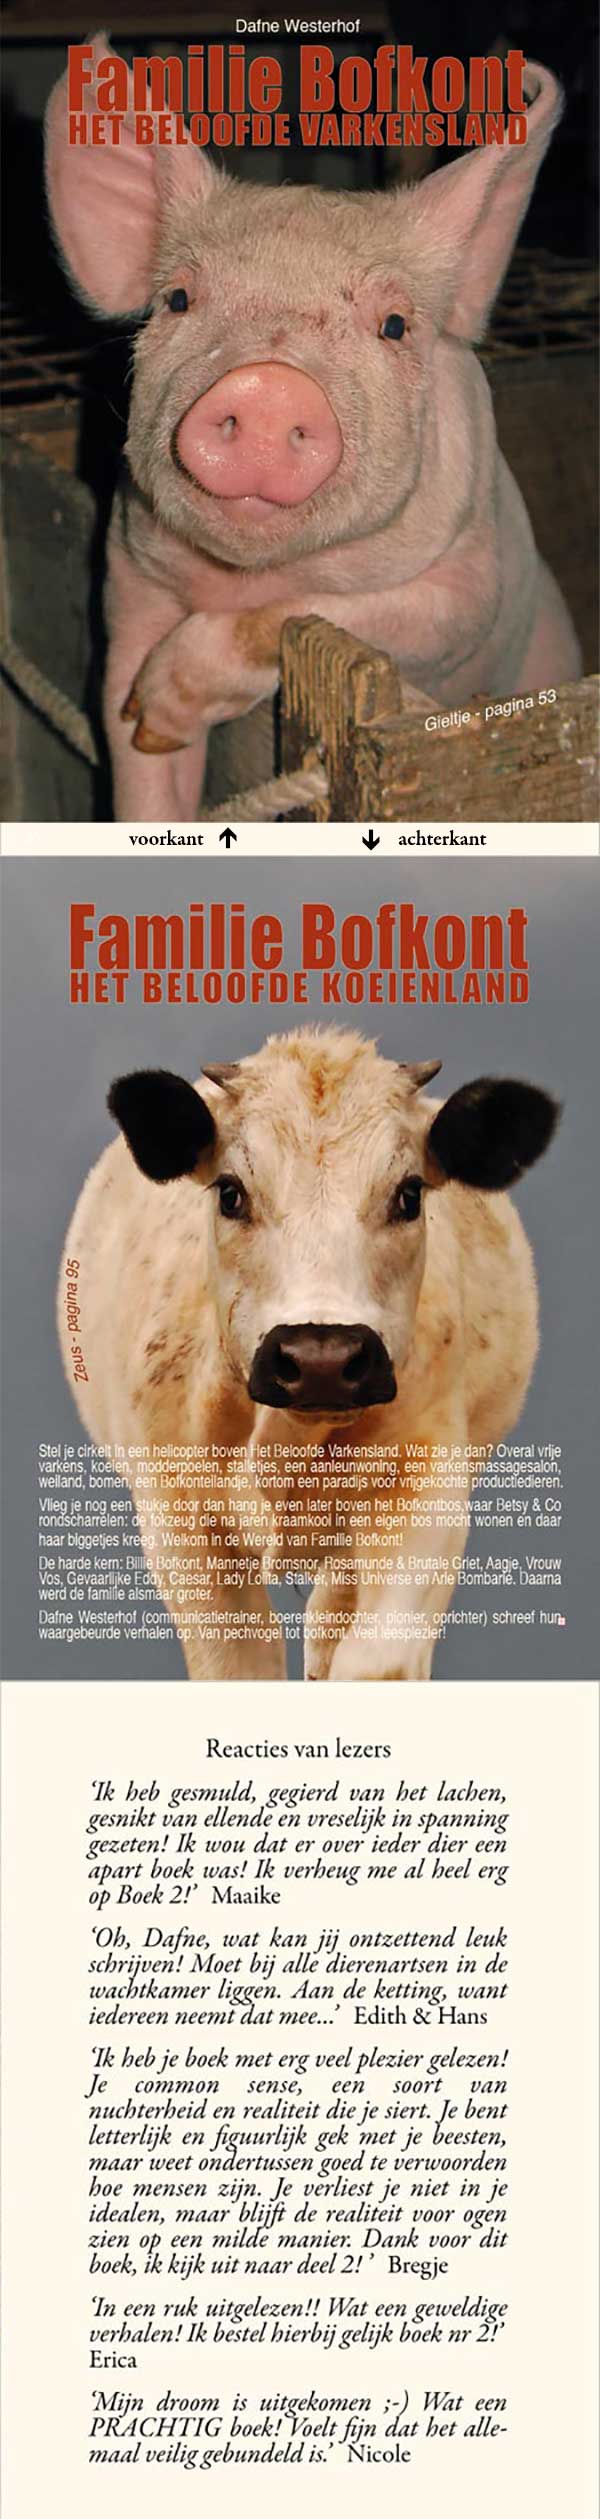 https://media.bfknt.nl/bofkont-boek.jpg